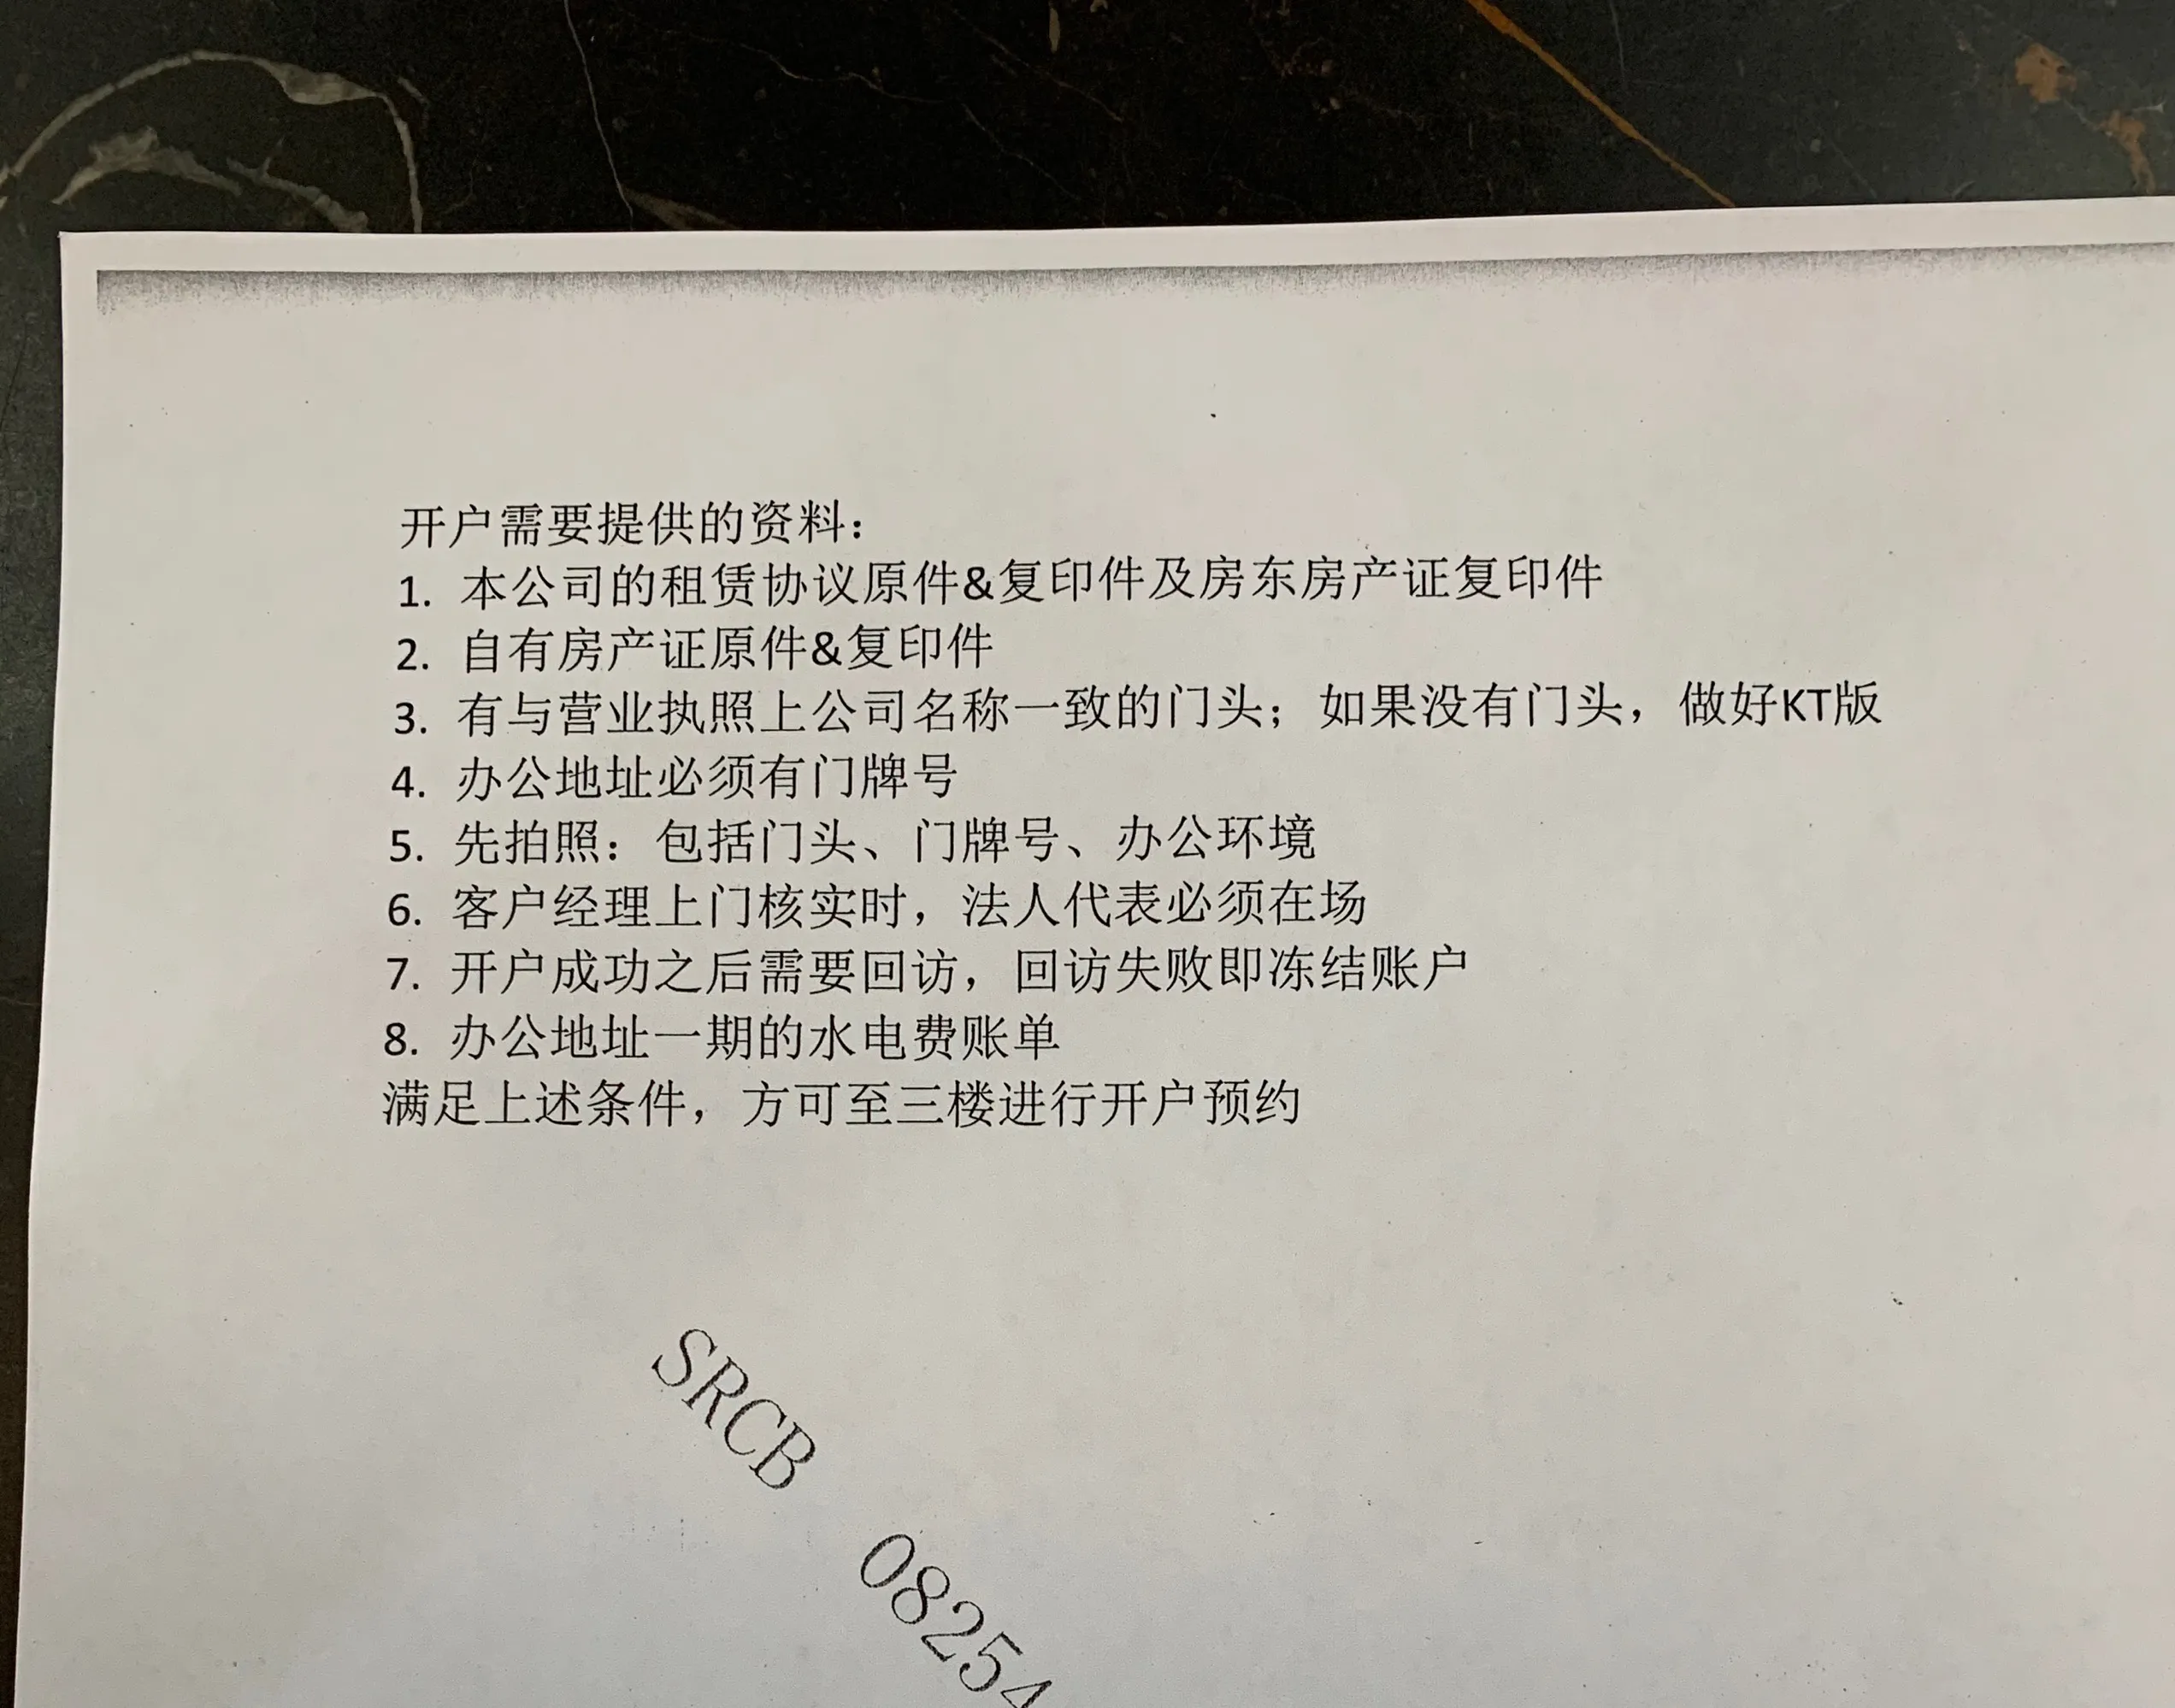 想创业的朋友们，我来分享一个在上海注册公司的两种方法